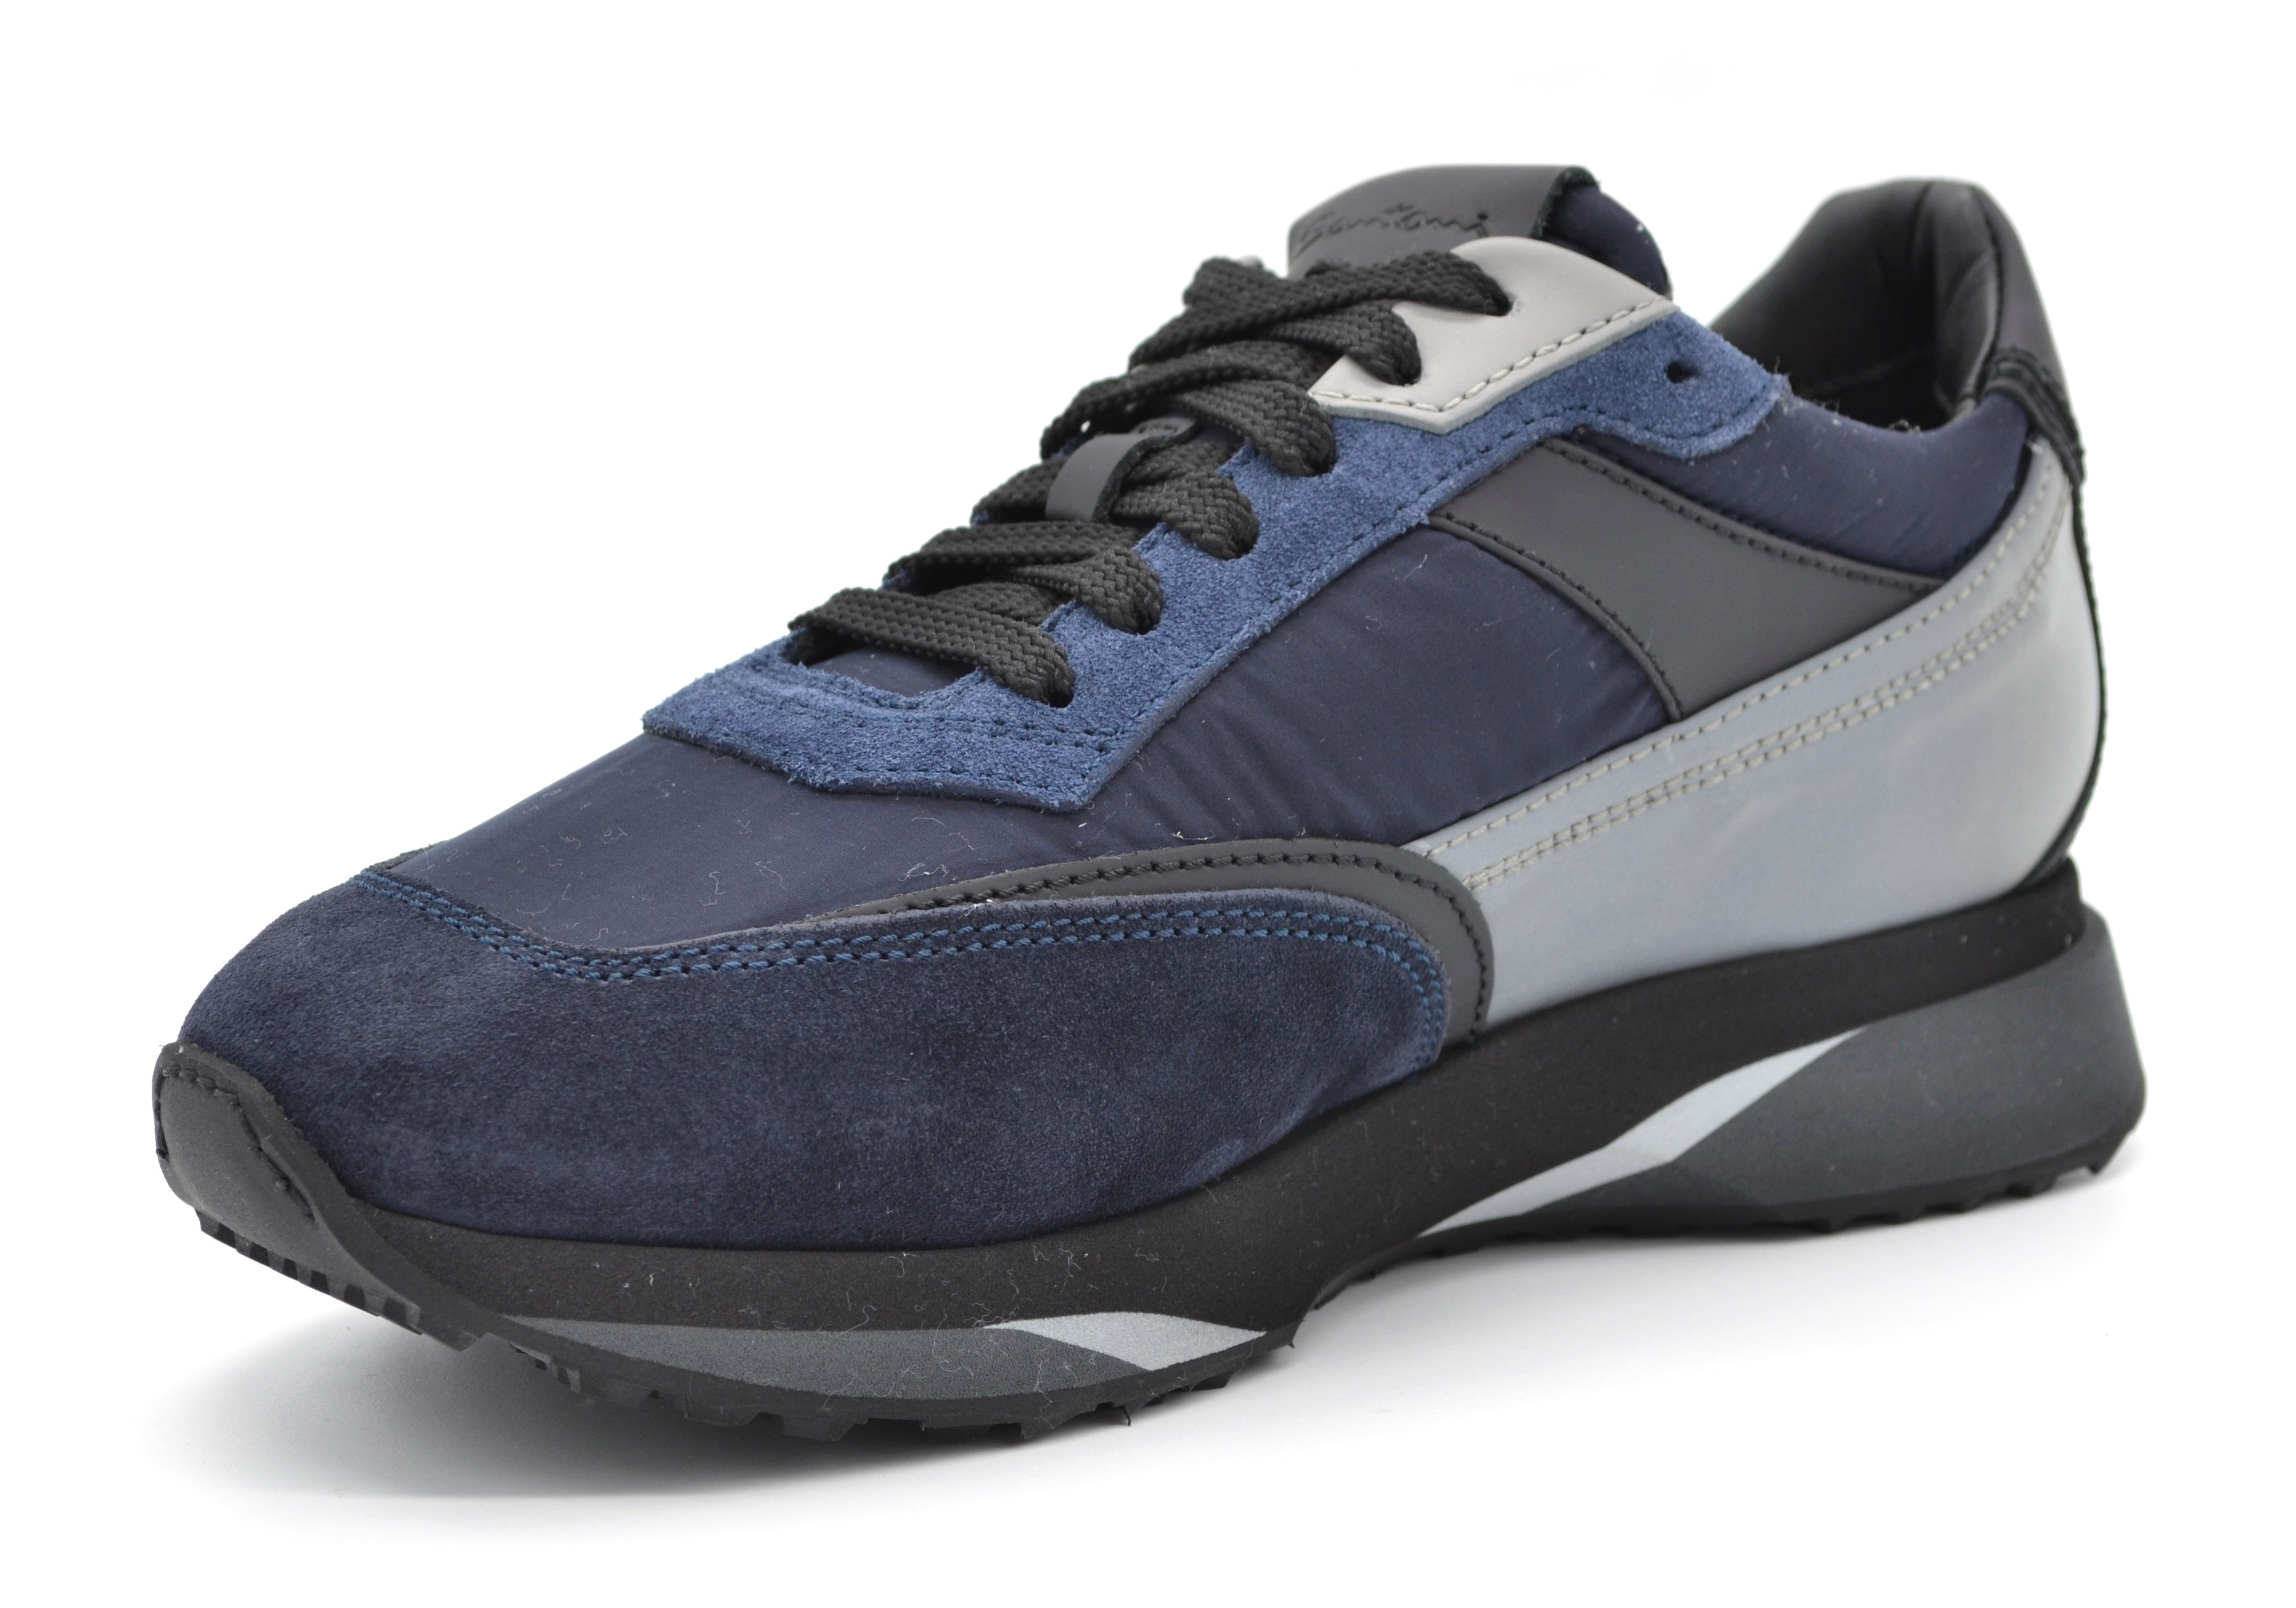 MBFW21168 grey blue sneaker